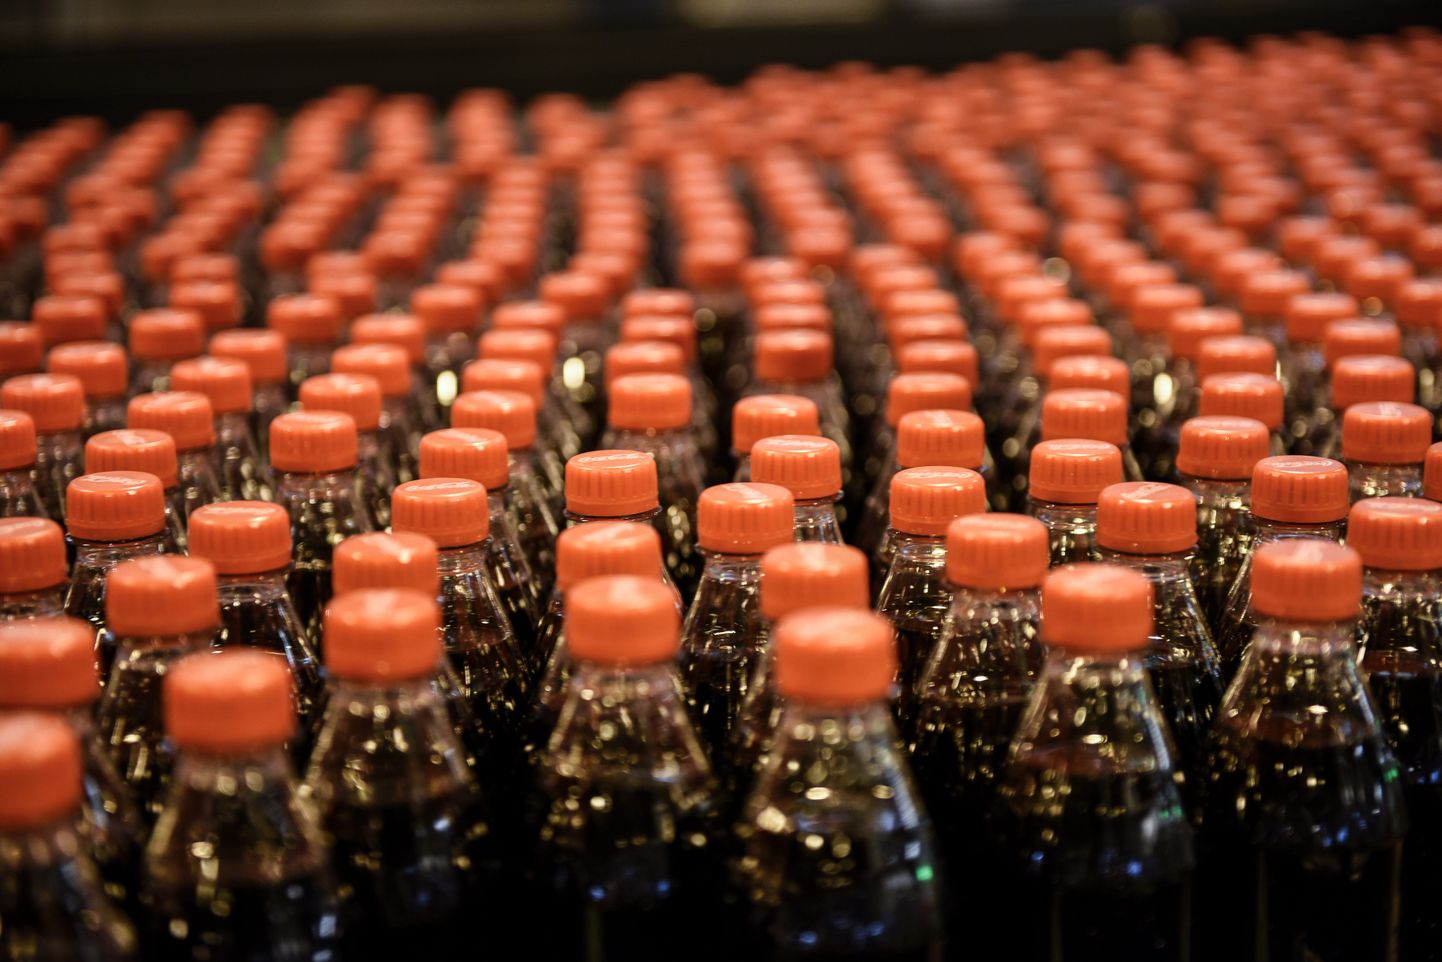 carbonated drink bottles, plastic bottles,industry,